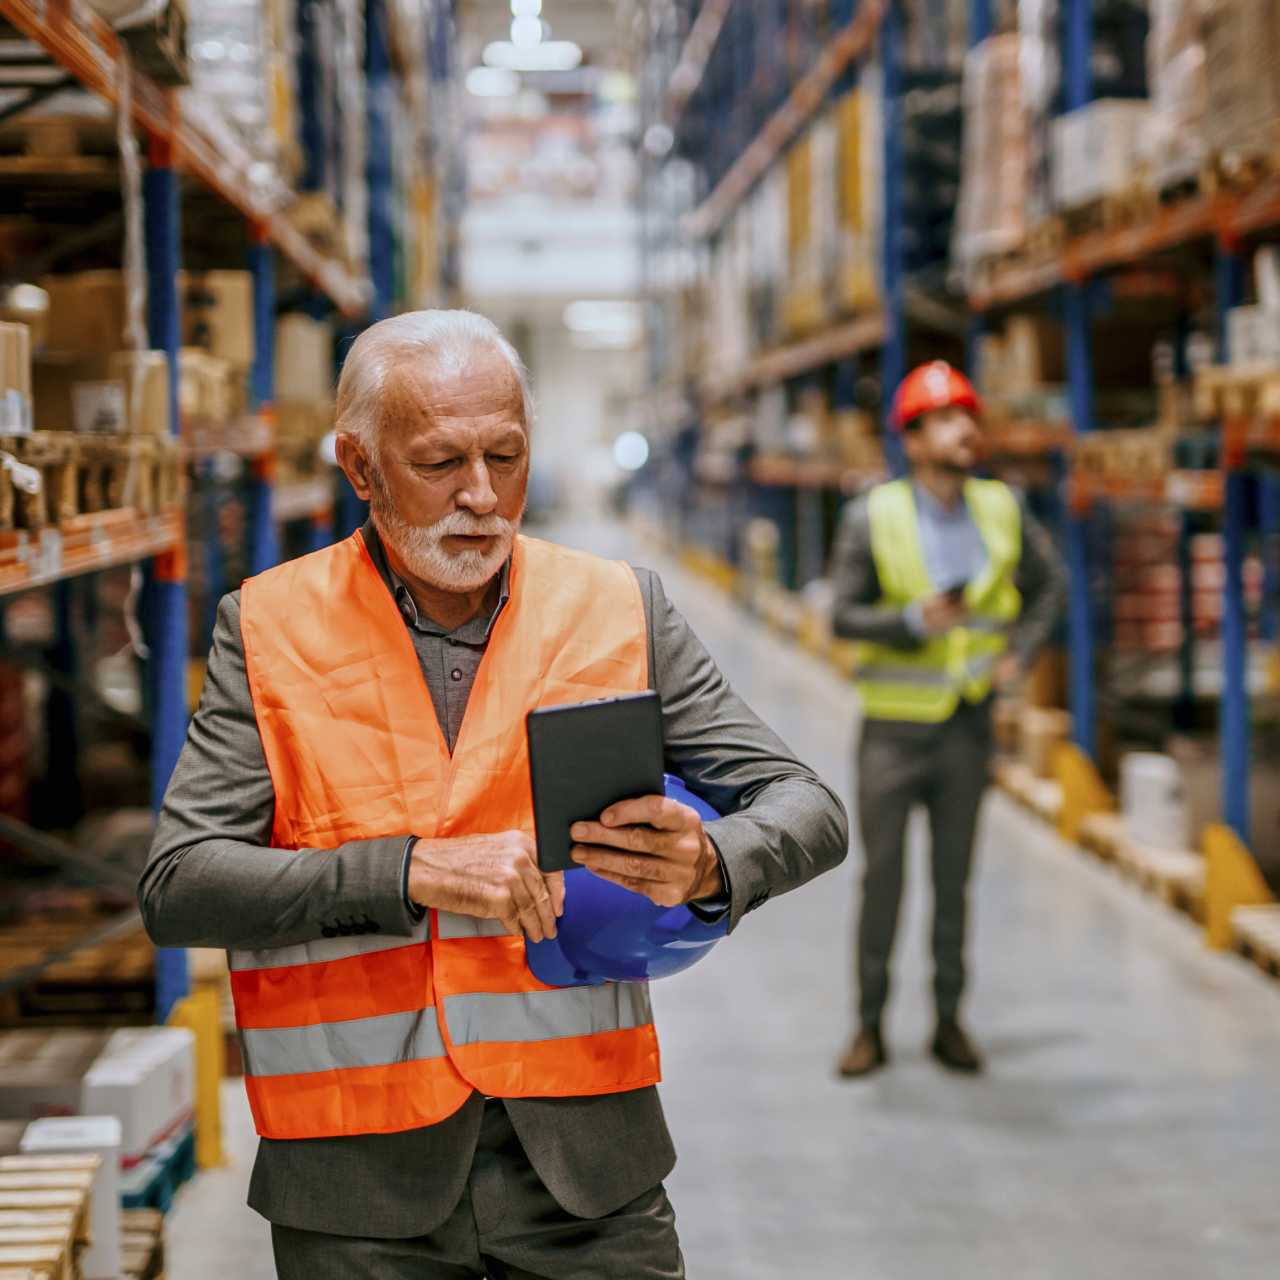 Older man wearing orange vest walking through storage warehouse while looking at smart device